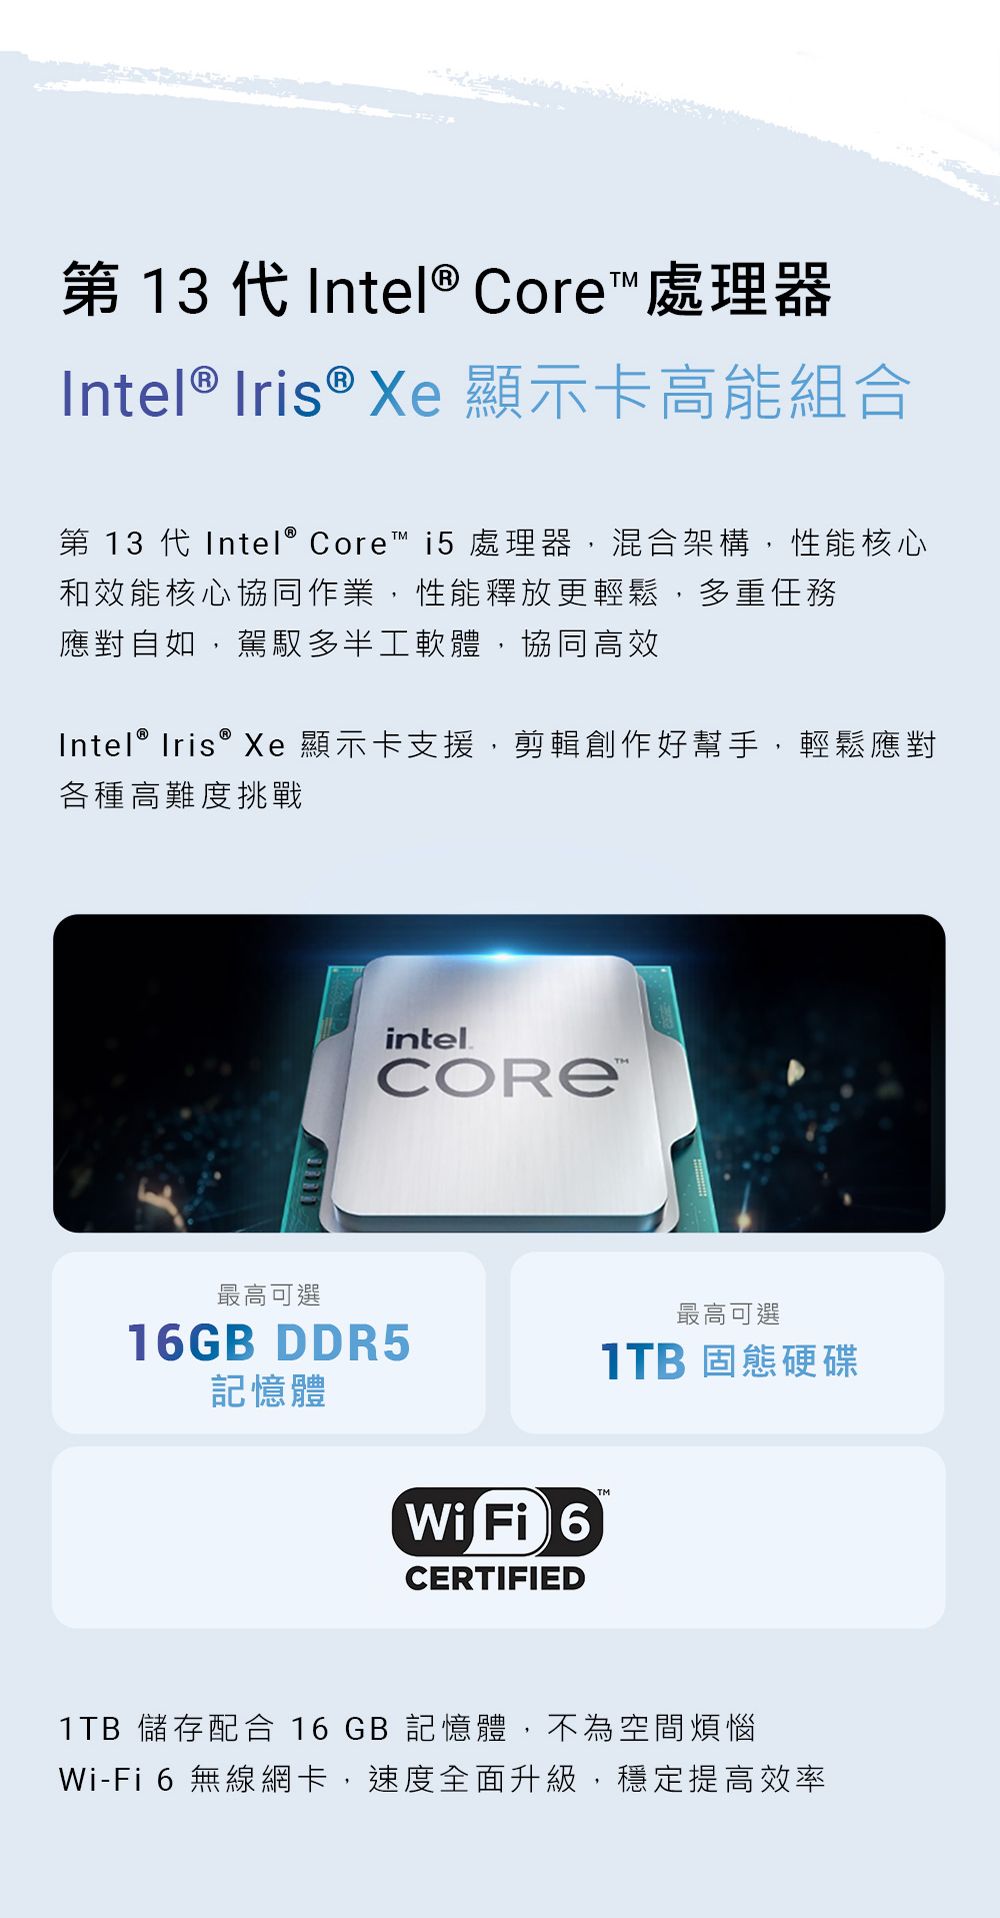 第 13 代Intel® Core 處理器Intel ® Iris ® Xe 顯示卡高能組合第 13 代Intel® Core™ i5處理器,混合架構,性能核心和效能核心協同作業,性能釋放更輕鬆,多重任務應對自如,駕馭多半工軟體,協同高效Intel® Iris® Xe顯示卡支援,剪輯創作好幫手,輕鬆應對各種高難度挑戰最高可選intelCORE™16GB DDR5記憶體Wi Fi 6CERTIFIED最高可選 固態硬碟1TB 儲存配合 16 GB 記憶體,不為空間煩惱Wi-Fi6 無線網卡,速度全面升級,穩定提高效率